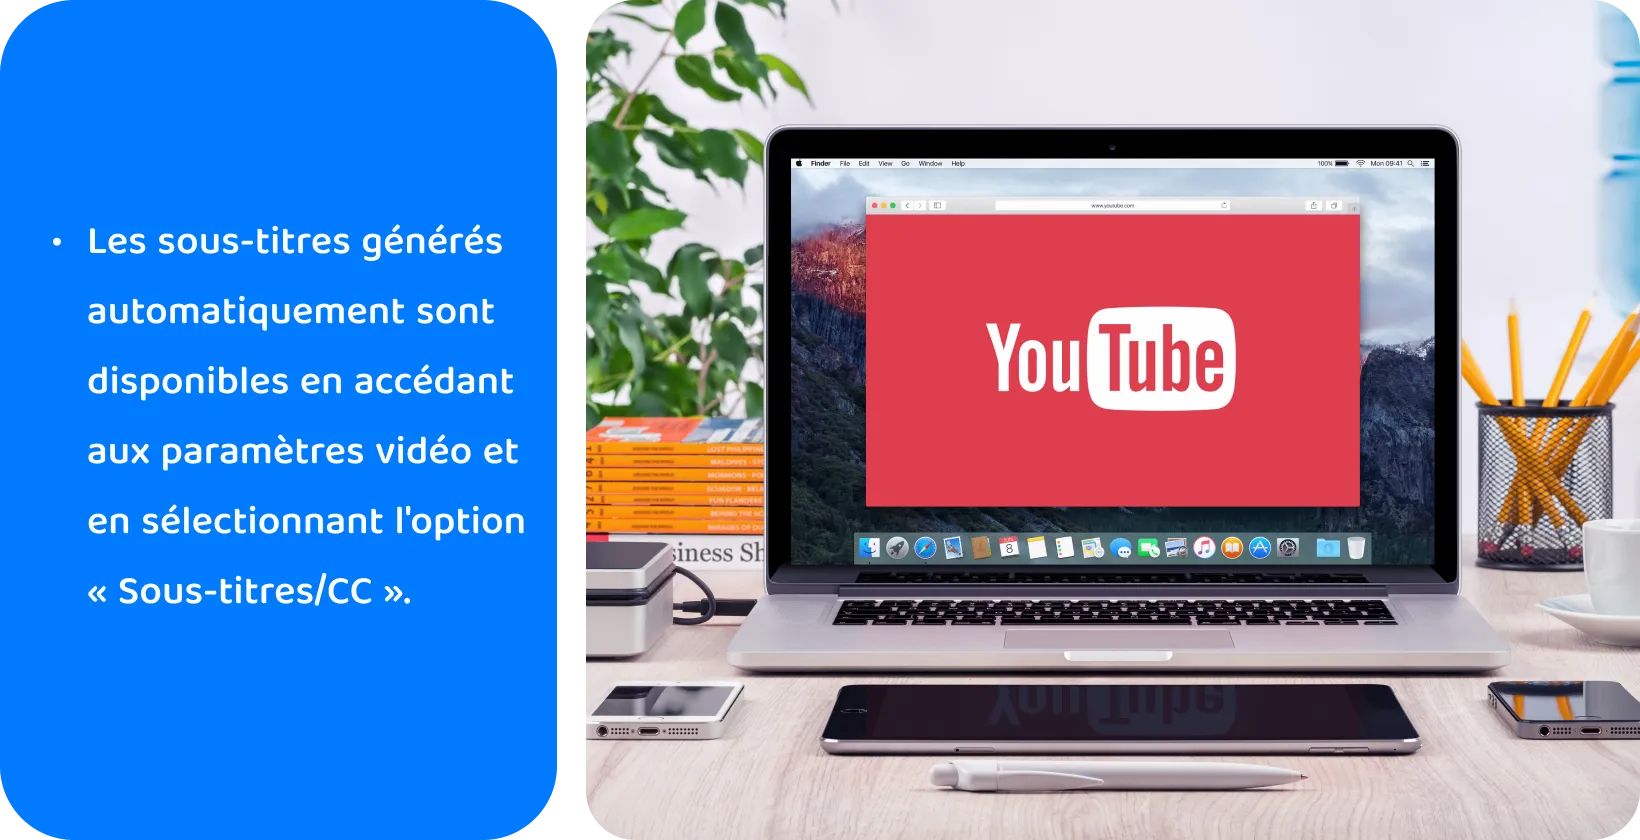 YouTube sur un écran d’ordinateur portable, favorisant l’utilisation de sous-titres générés automatiquement pour l’accessibilité vidéo et le SEO.